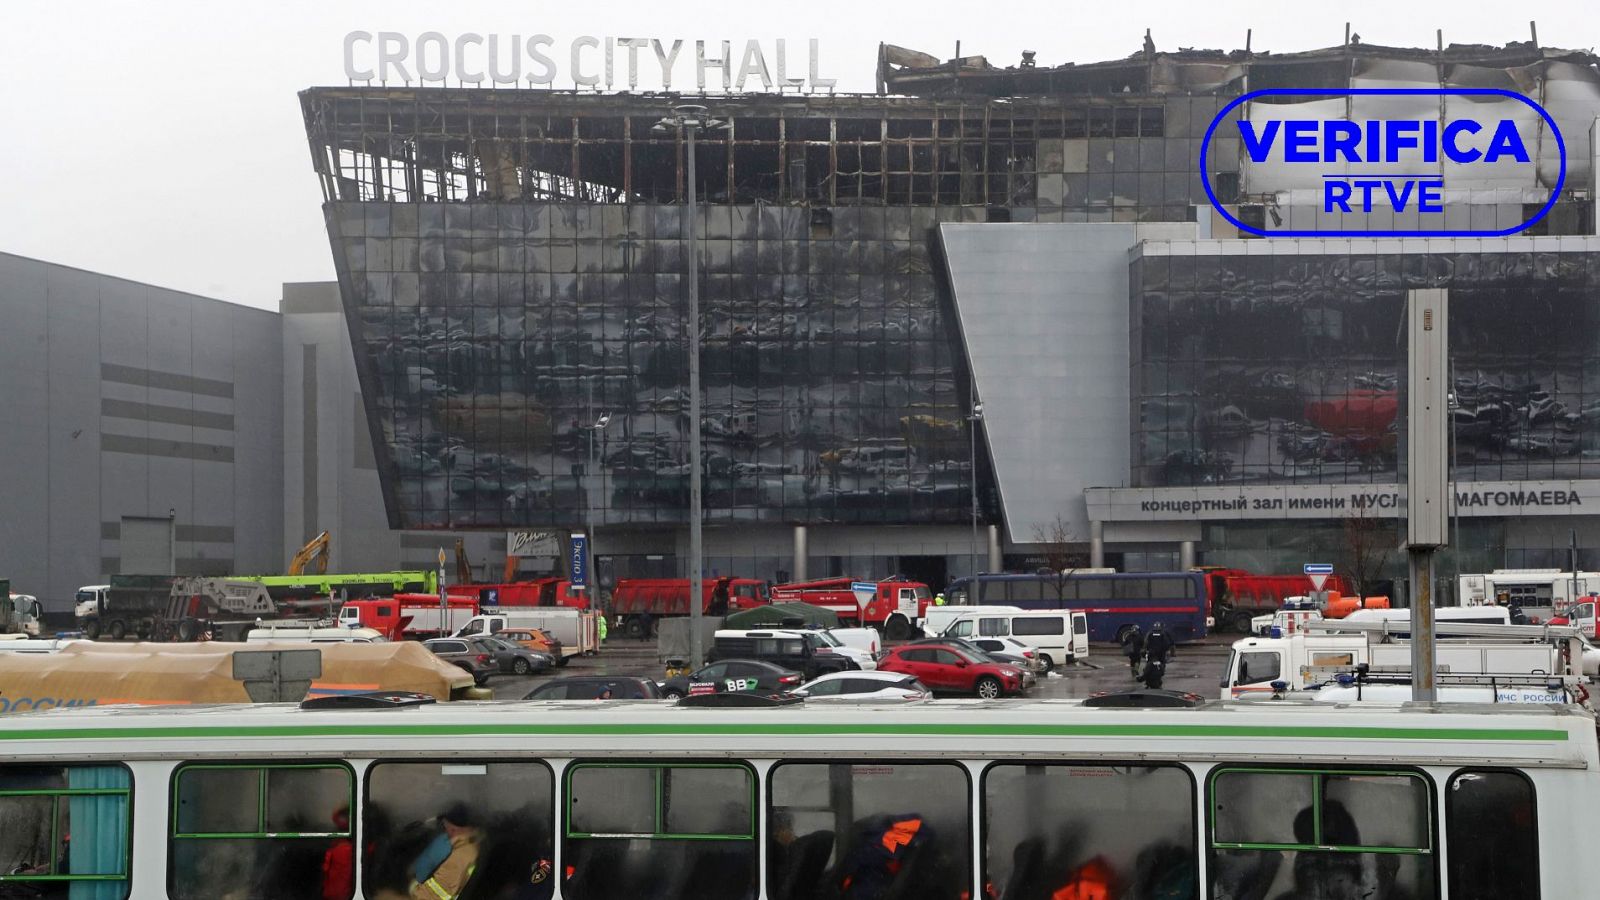 Bulos y falsedades sobre el atentado en el Crocus City Hall en Mosc